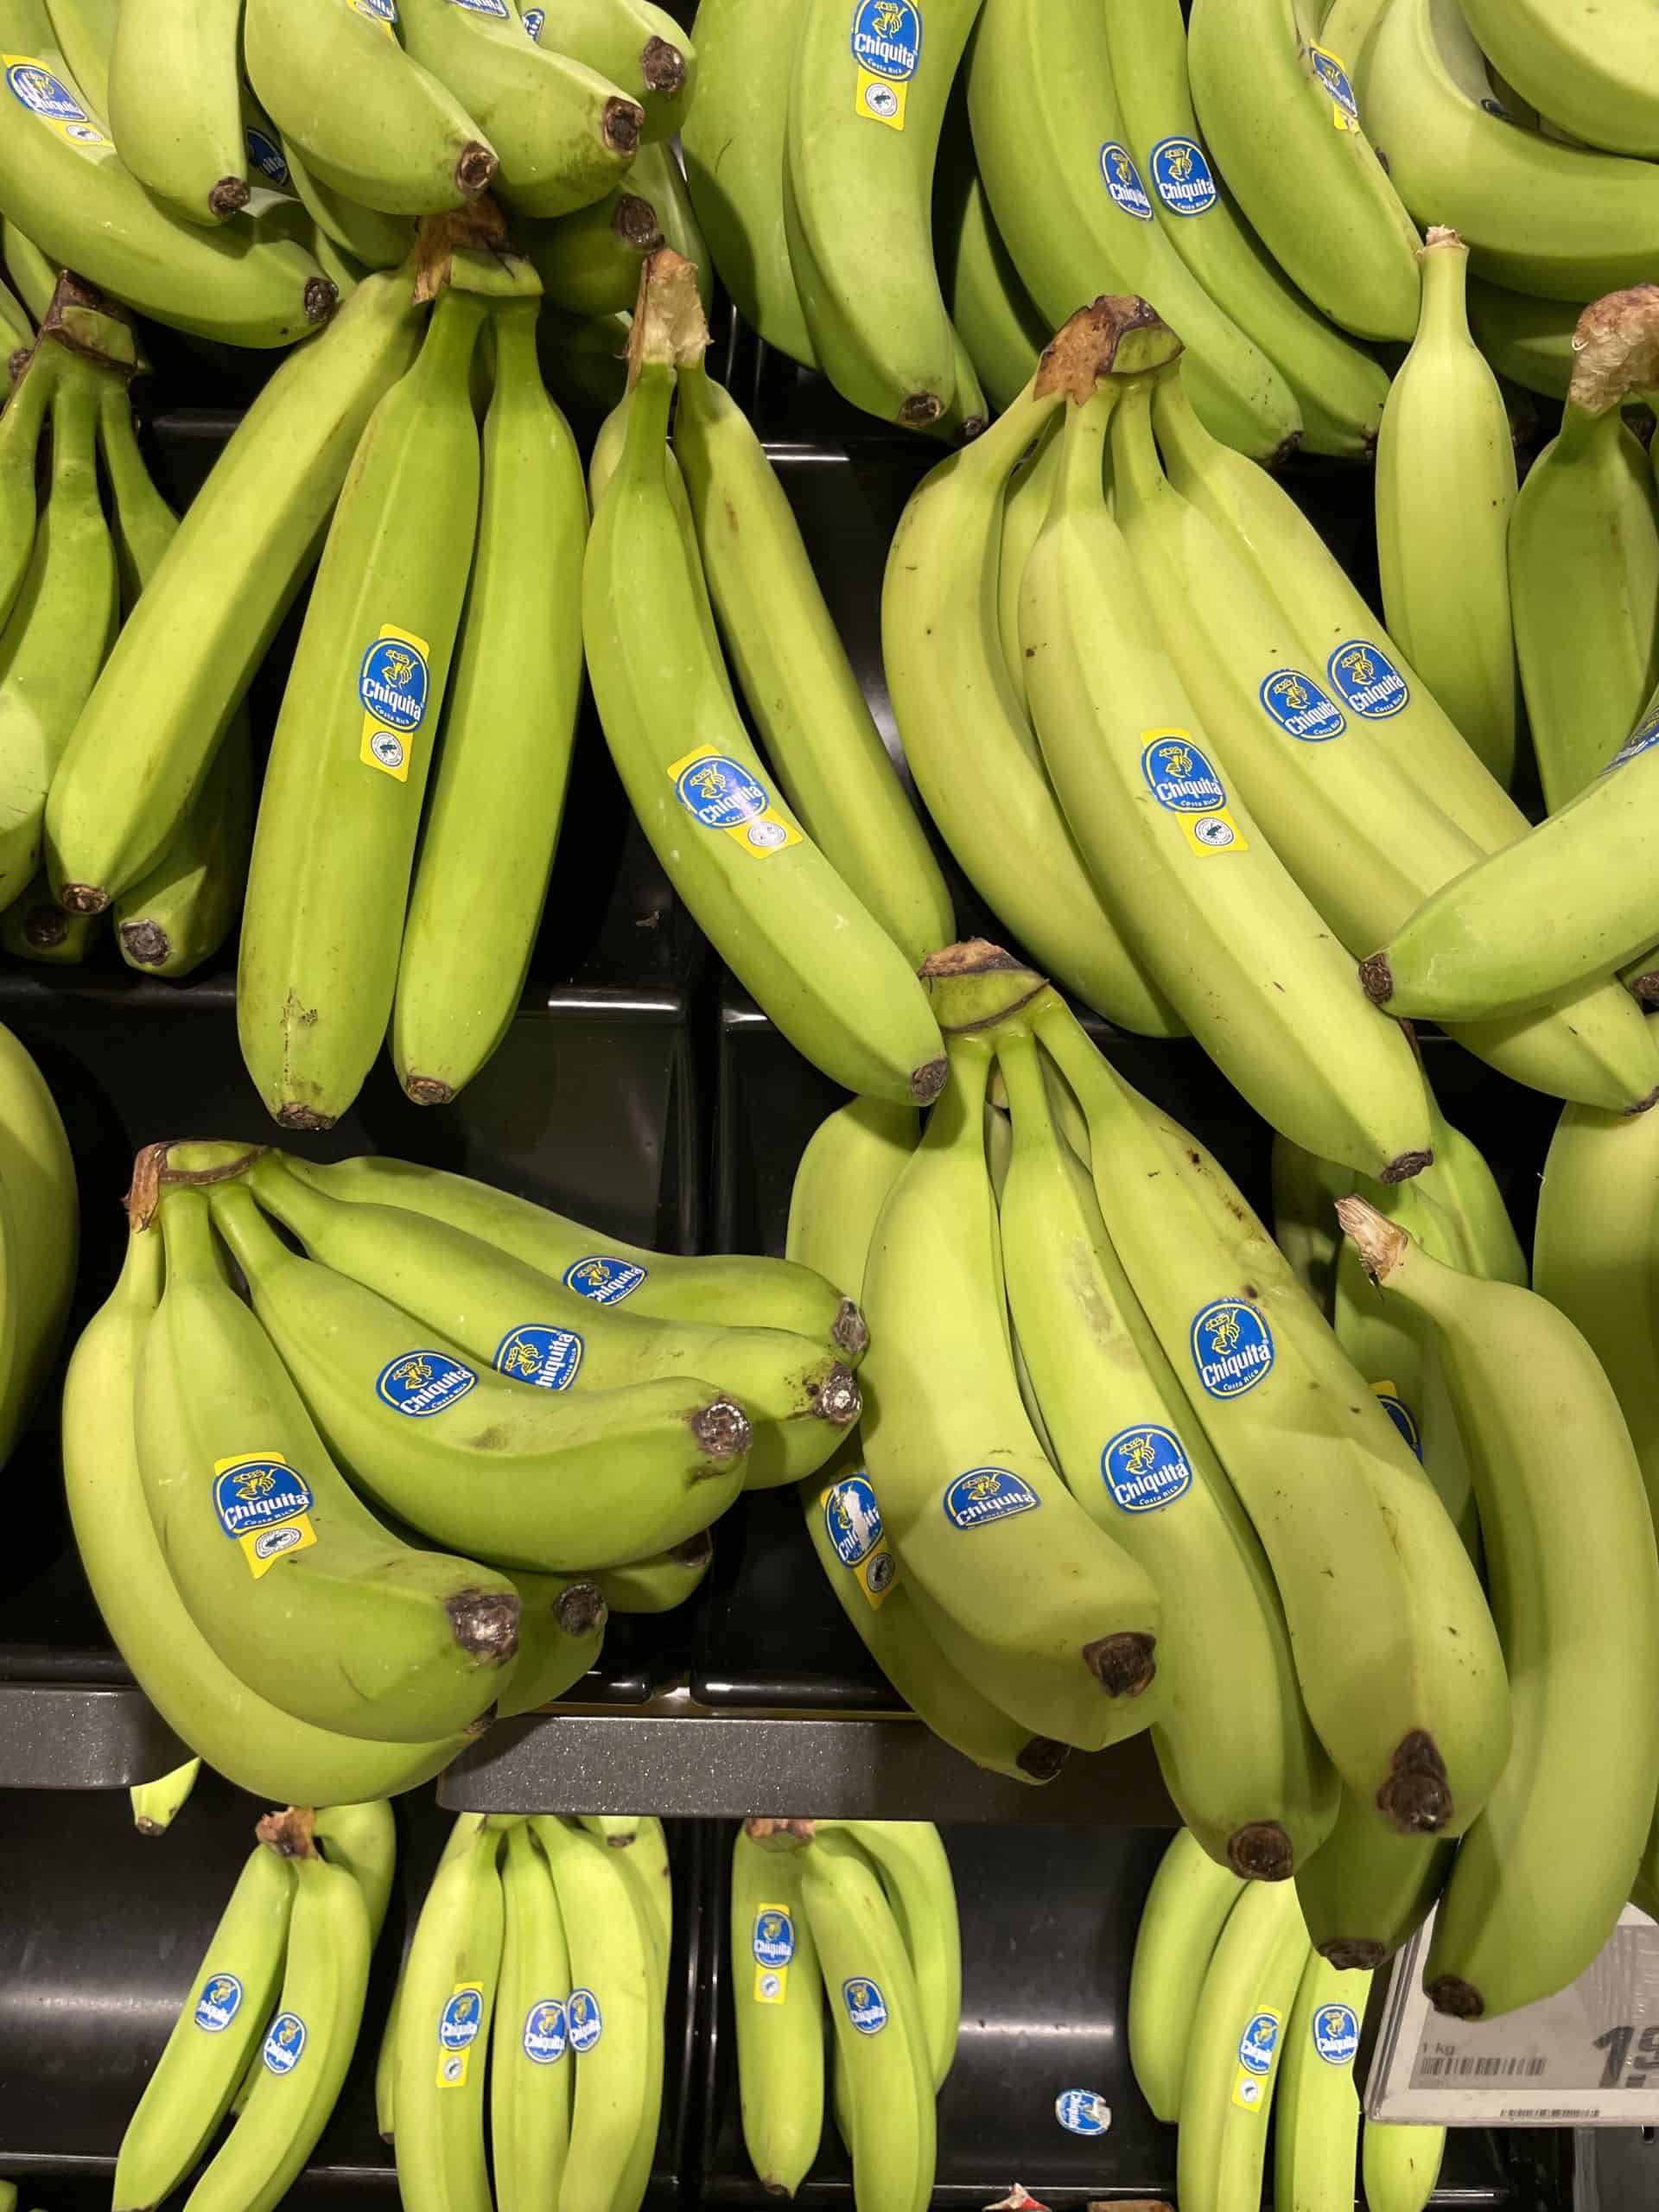 grüne Chiquita-Bananen I’m Supermarkt